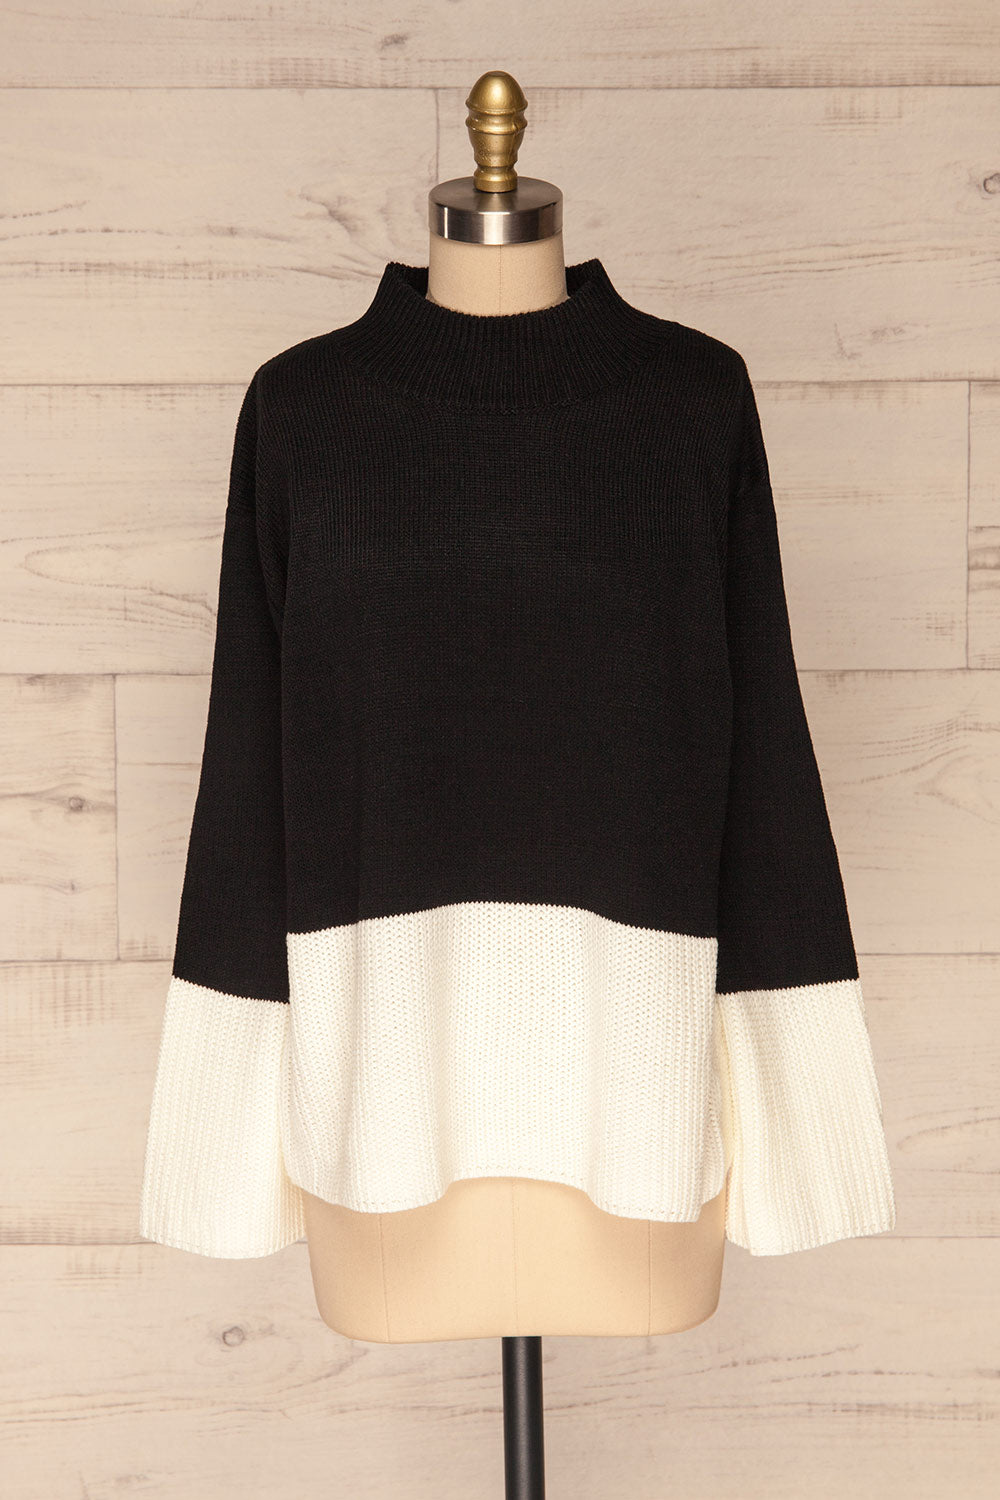 Barisci Black & White Block Knit Sweater front view | La Petite Garçonne